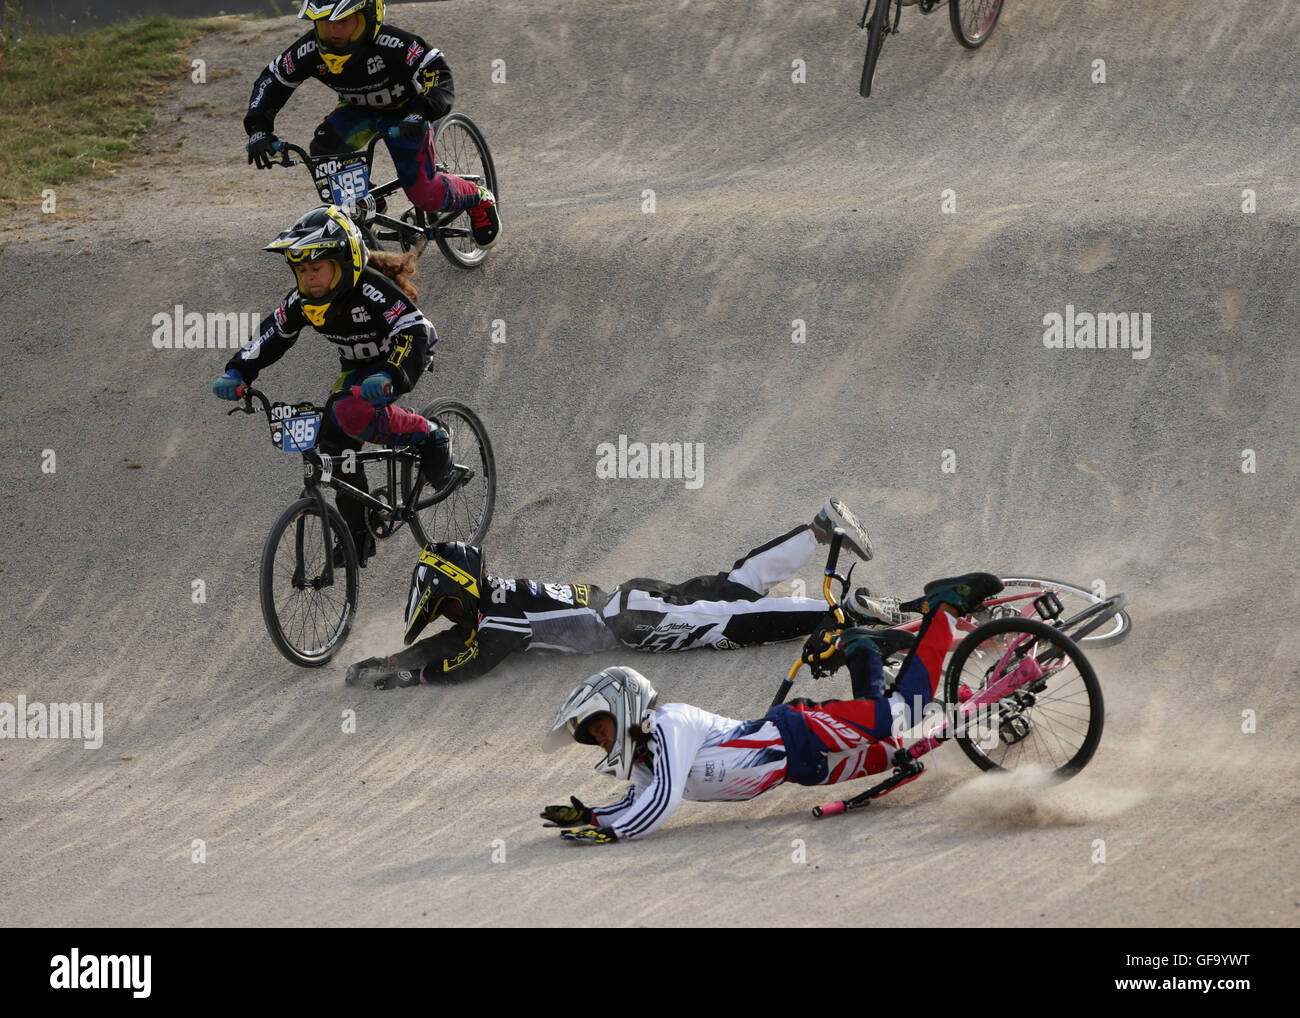 Crash concurrents leurs vélos lors d'une course de BMX à la Prudential RideLondon Grand Prix au Lee Valley VeloPark, Queen Elizabeth Olympic Park, à Londres. Banque D'Images